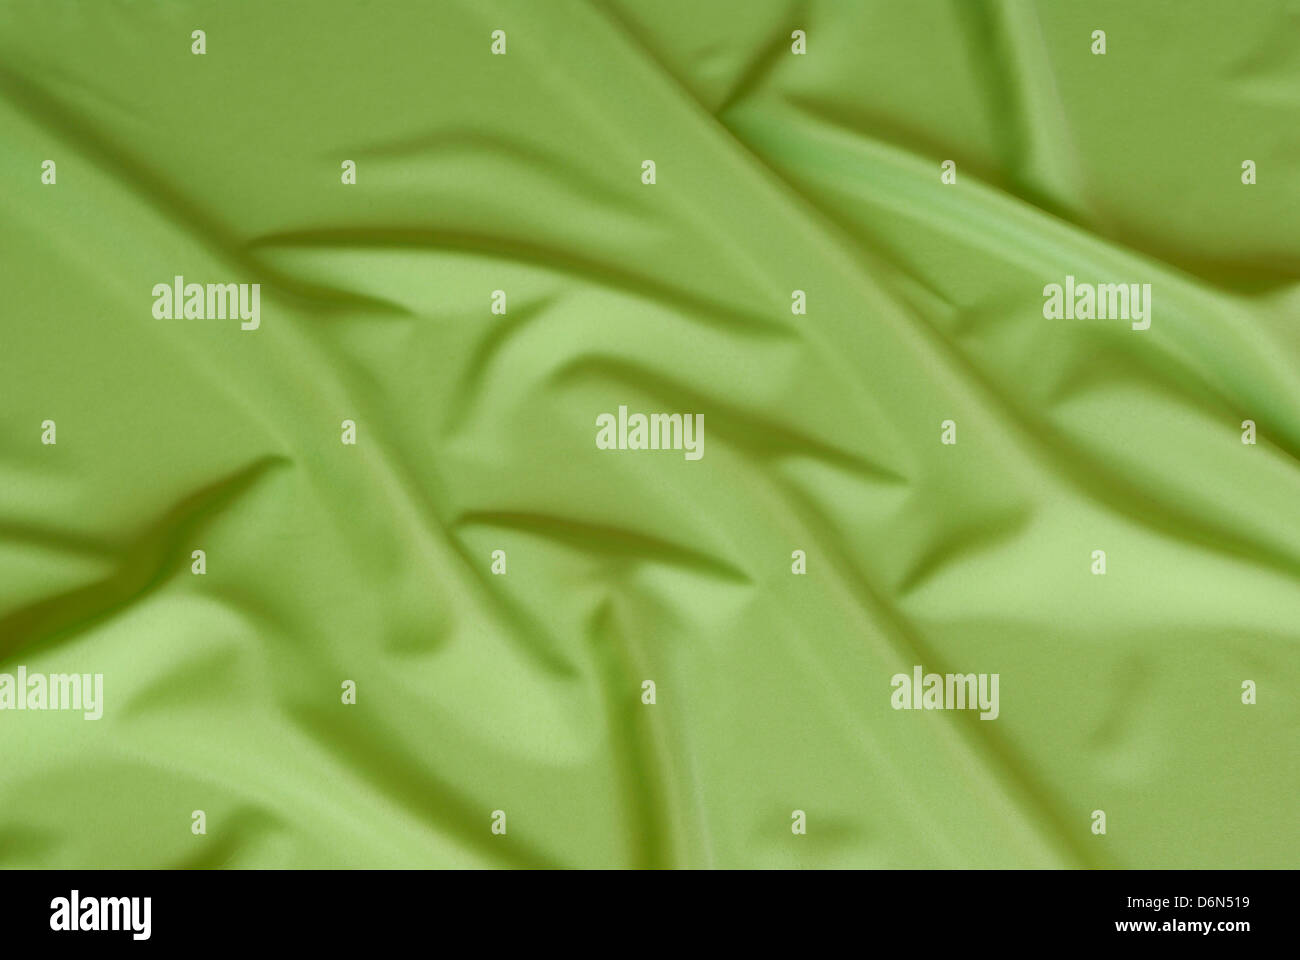 Grün und seidigen Stoff als Hintergrund angeordnet Stockfoto